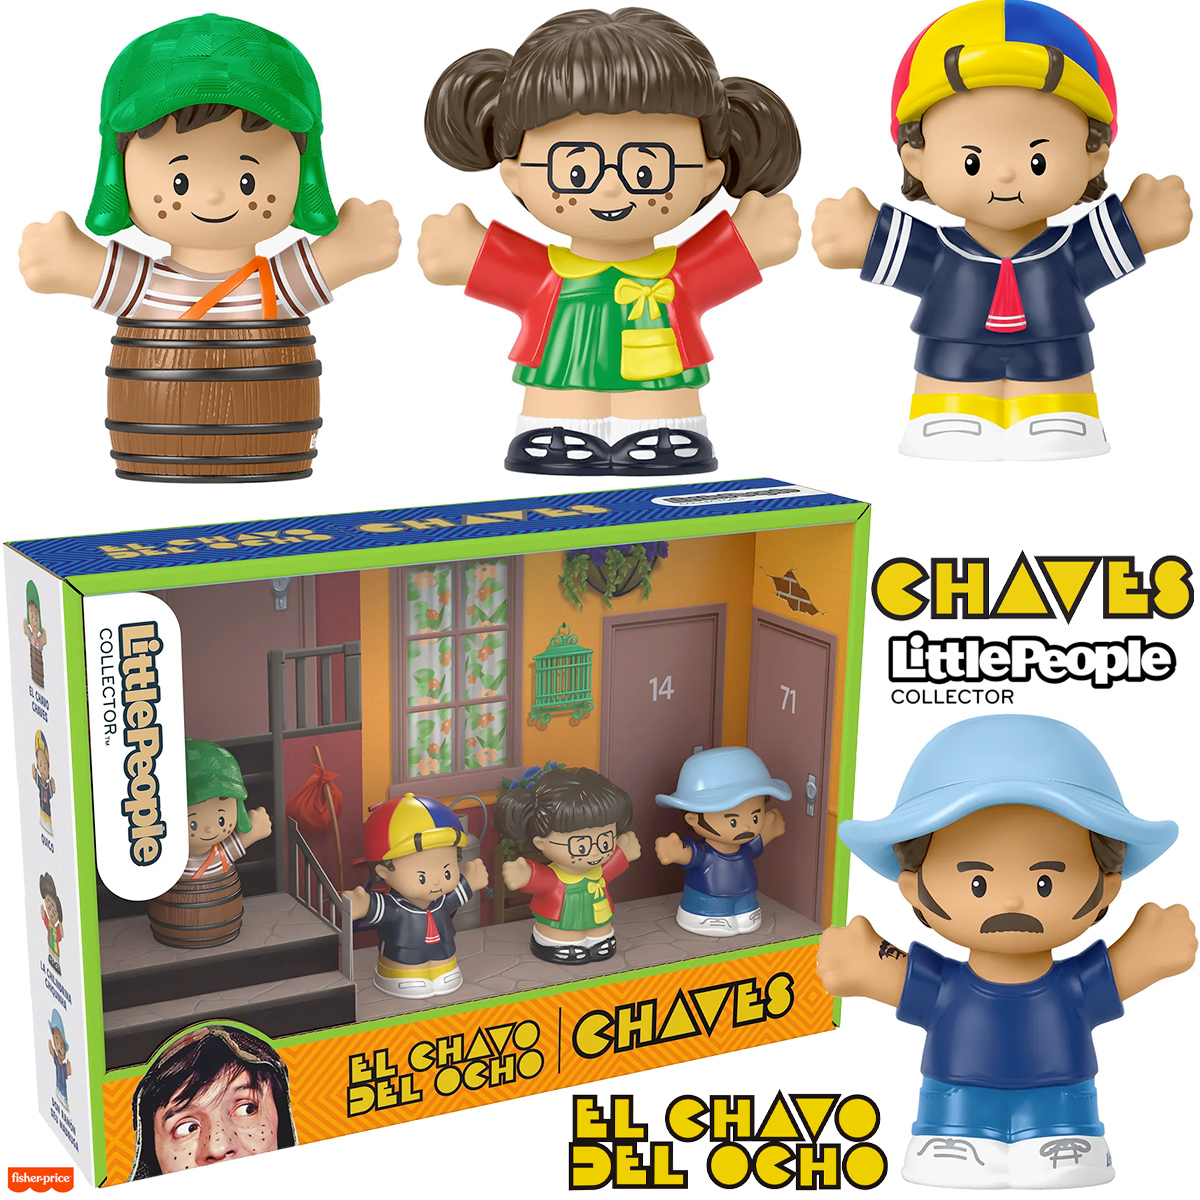 Bonecos Little People Collector Chaves (El Chavo del Ocho)